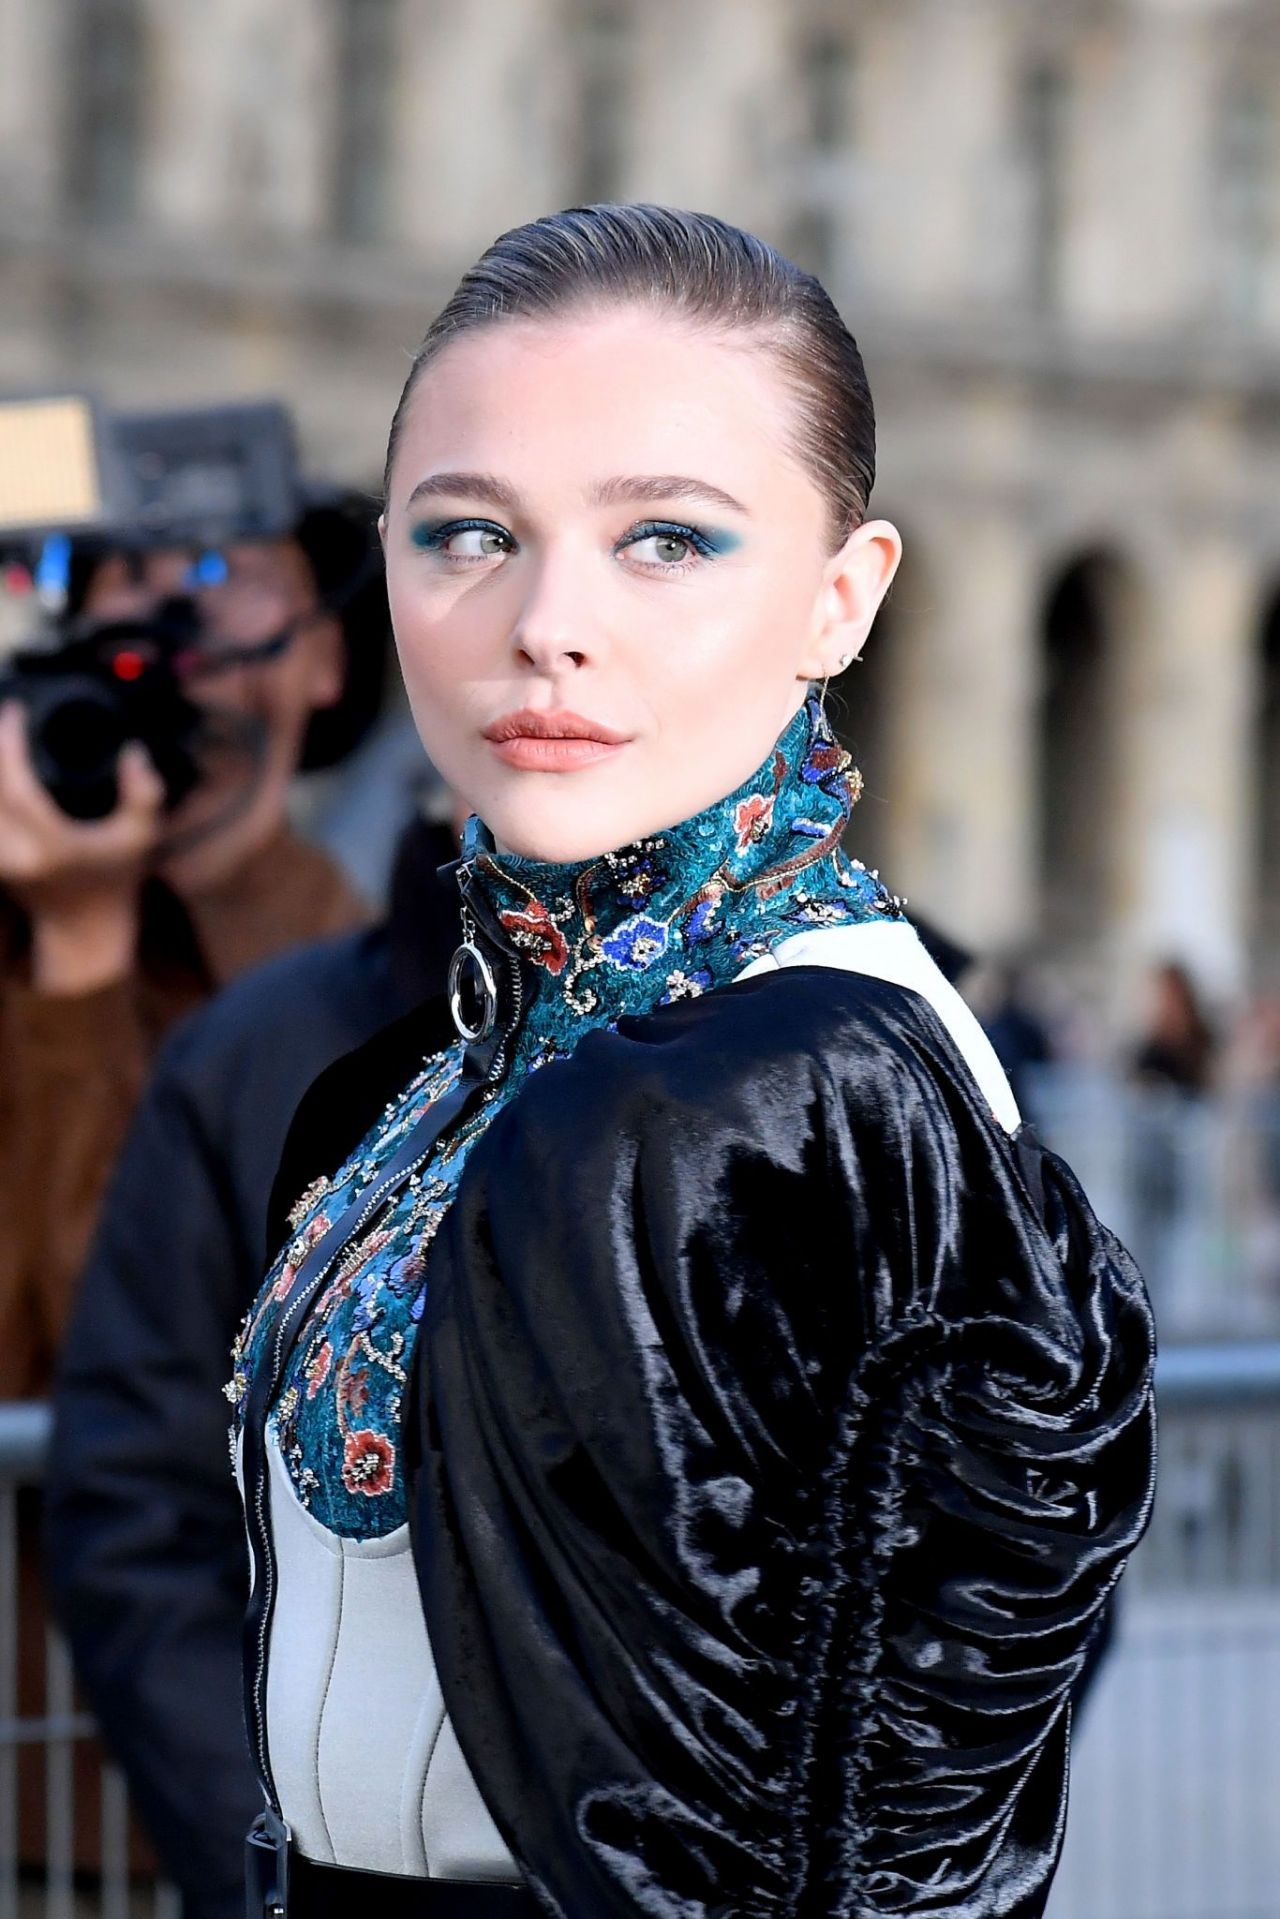 Chloe Moretz Louis Vuitton Show in Paris March 5, 2019 – Star Style